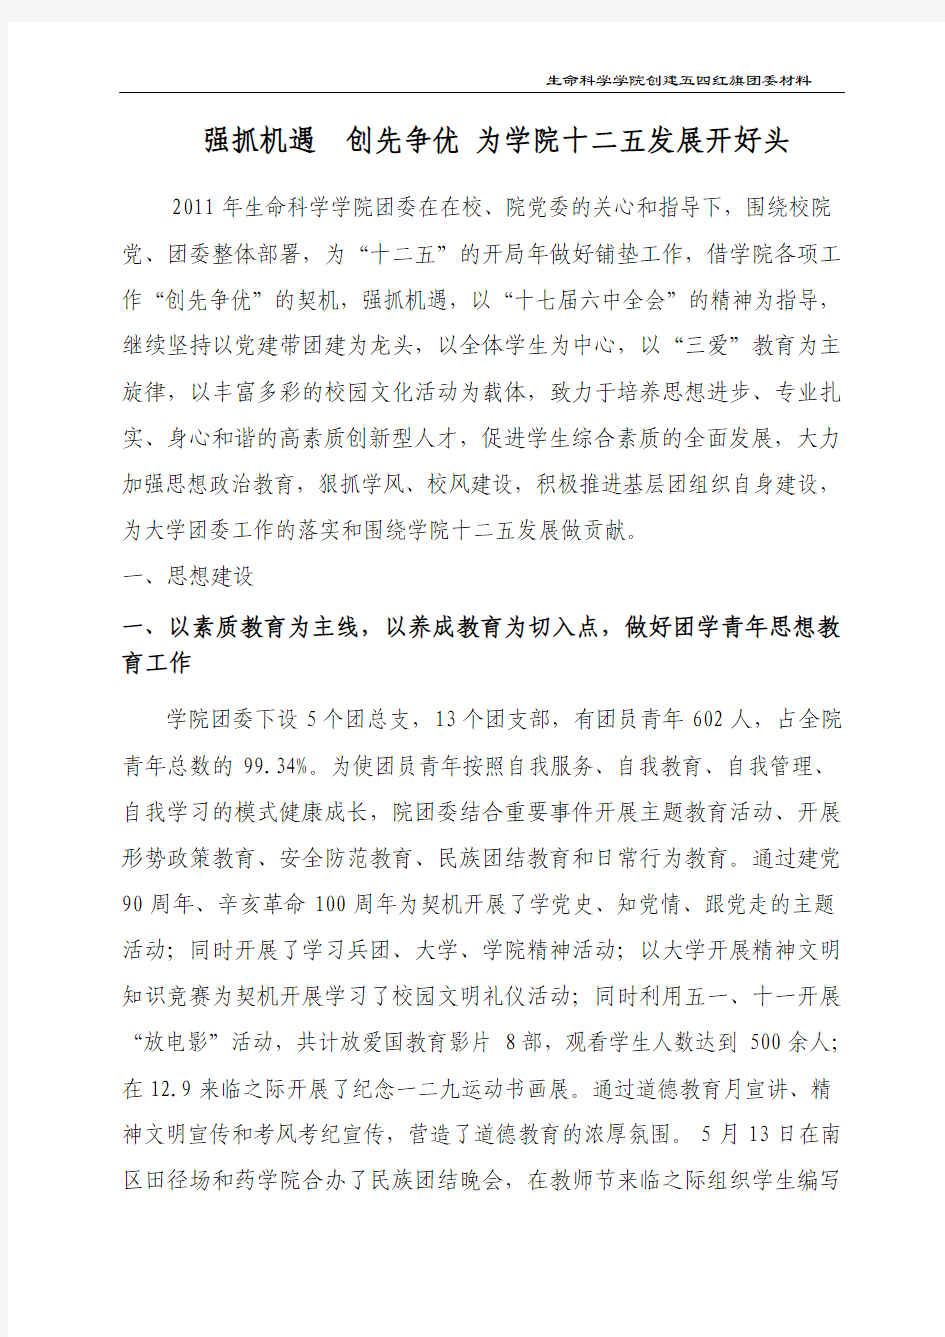 石河子大学生命科学学院2011年度大学五四红旗团委申报材料(王迎涛)